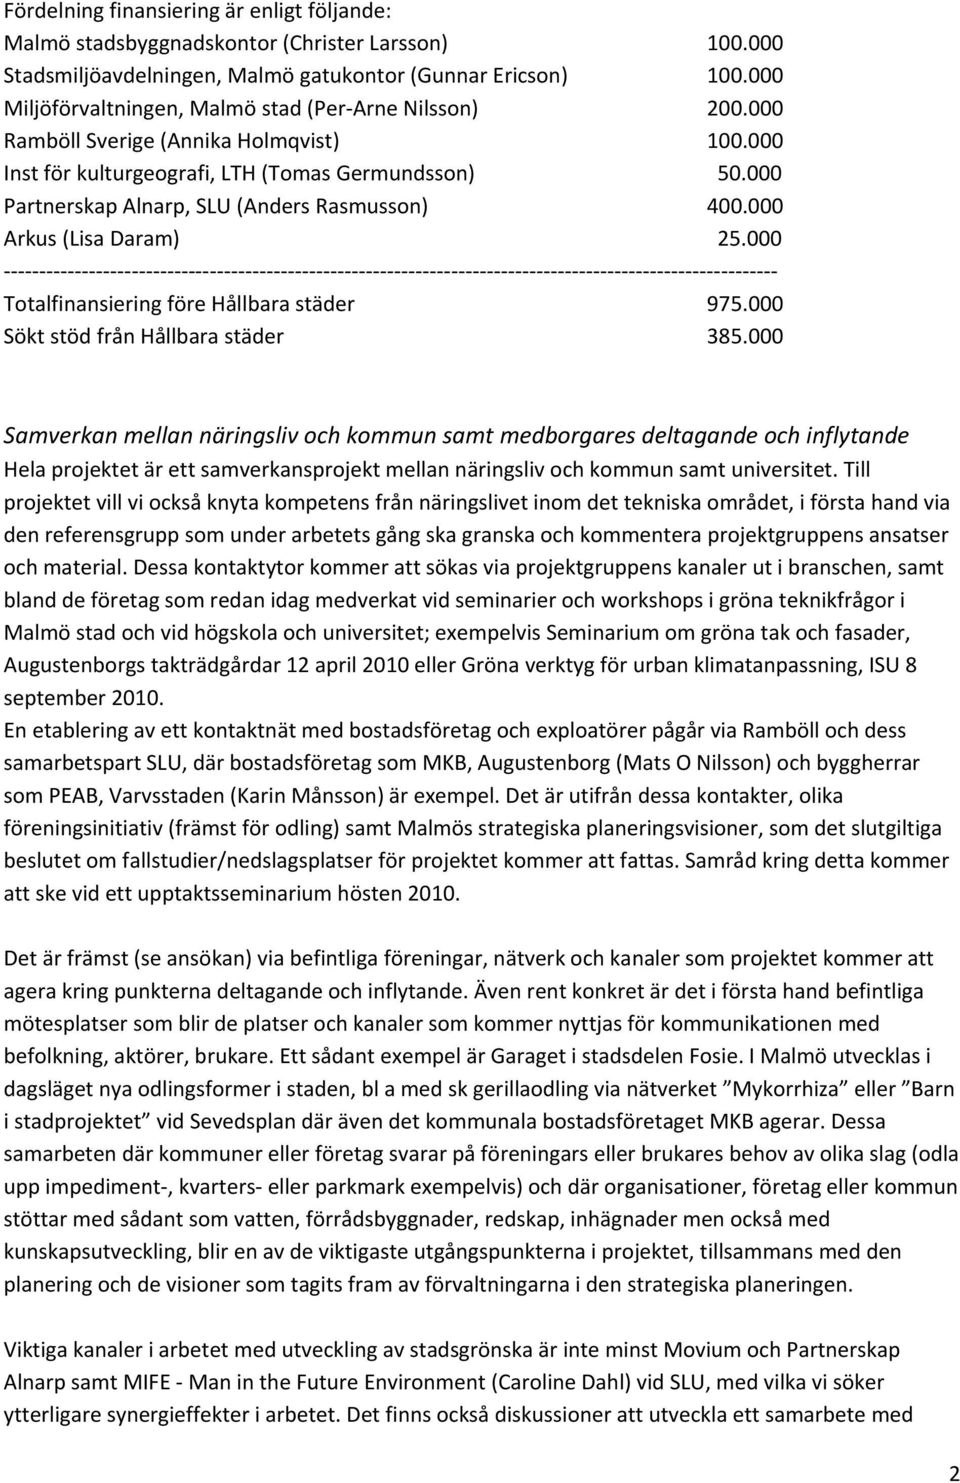 000 Partnerskap Alnarp, SLU (Anders Rasmusson) 400.000 Arkus (Lisa Daram) 25.000 Totalfinansiering före Hållbara städer 975.000 Sökt stöd från Hållbara städer 385.